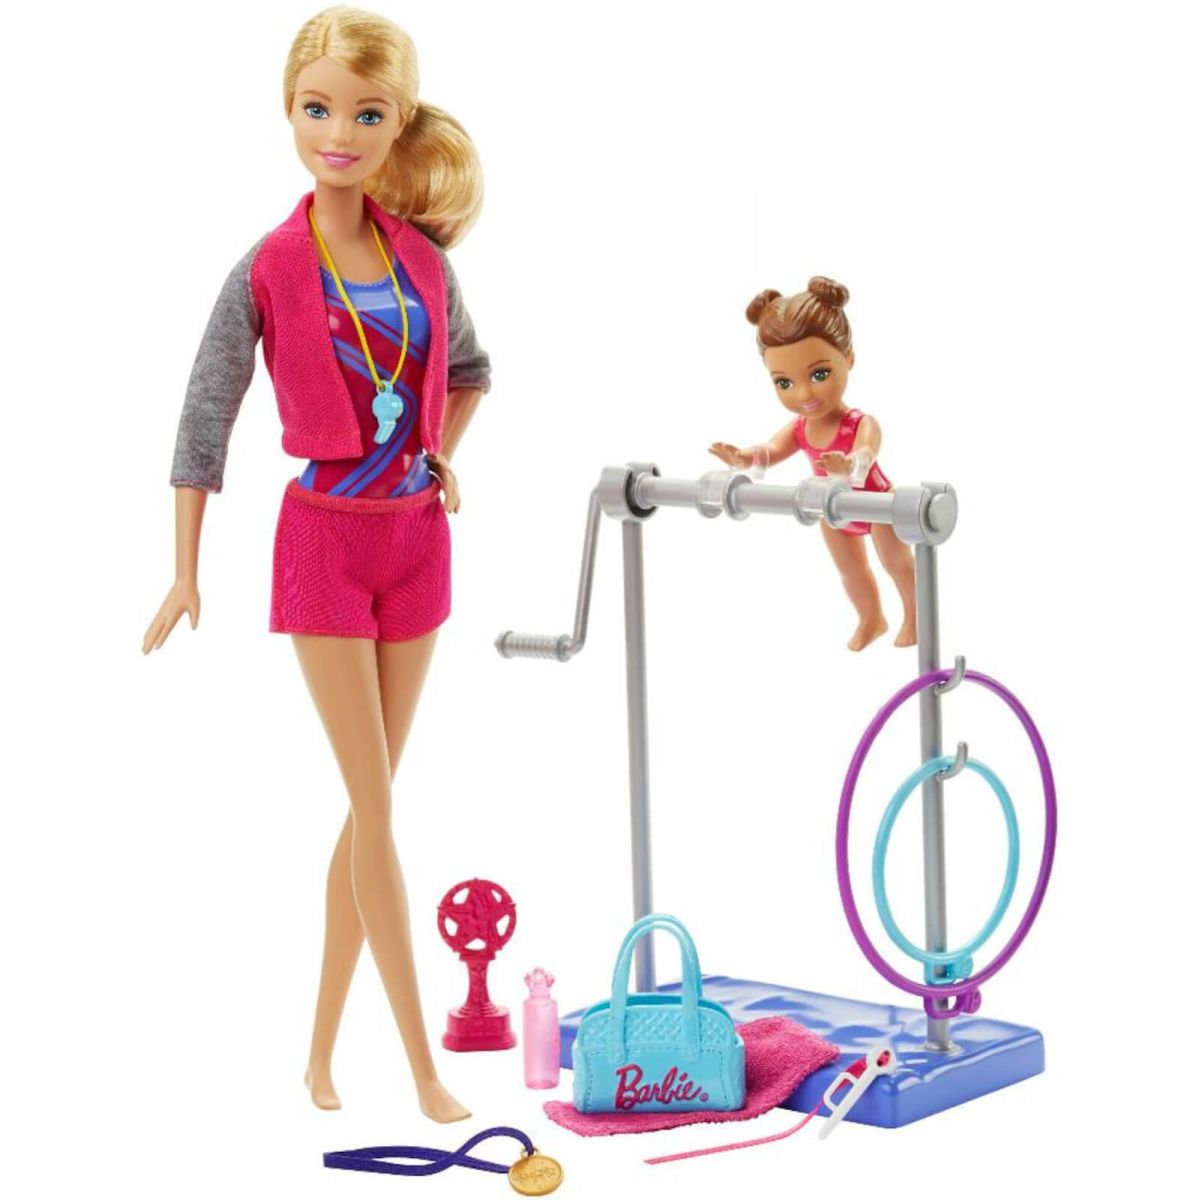 Mattel Barbie sportovní set Gymnastka